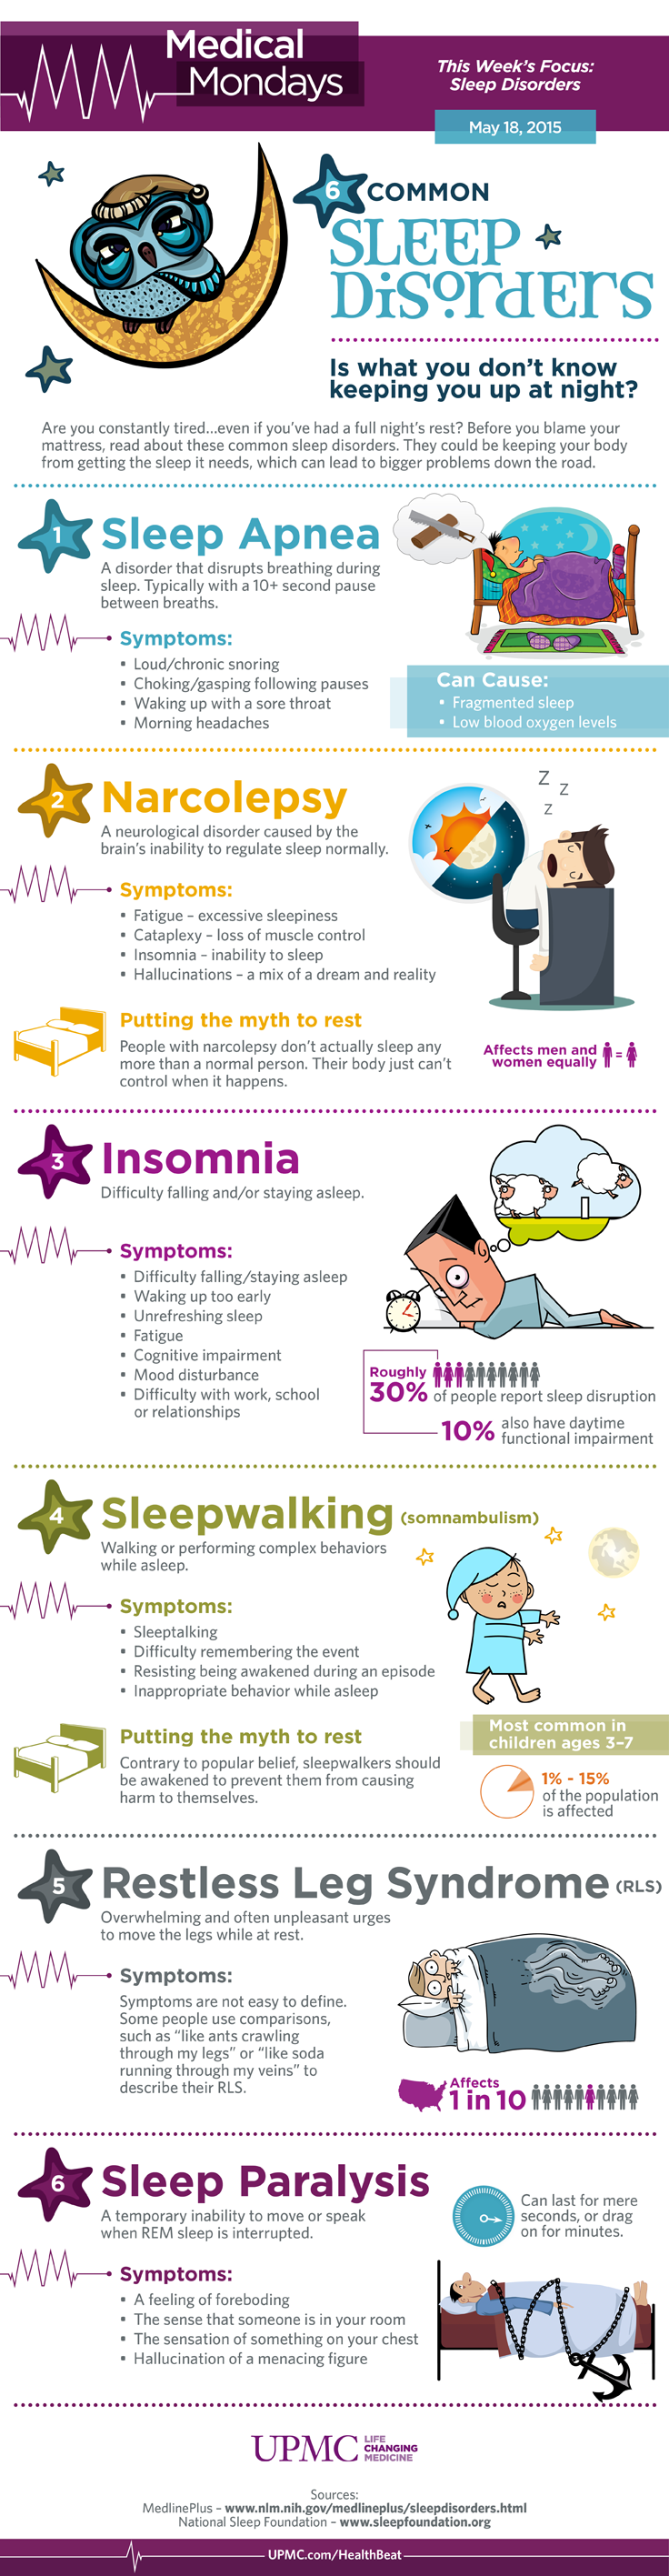 infographic-6-common-sleep-disorders-upmc-healthbeat